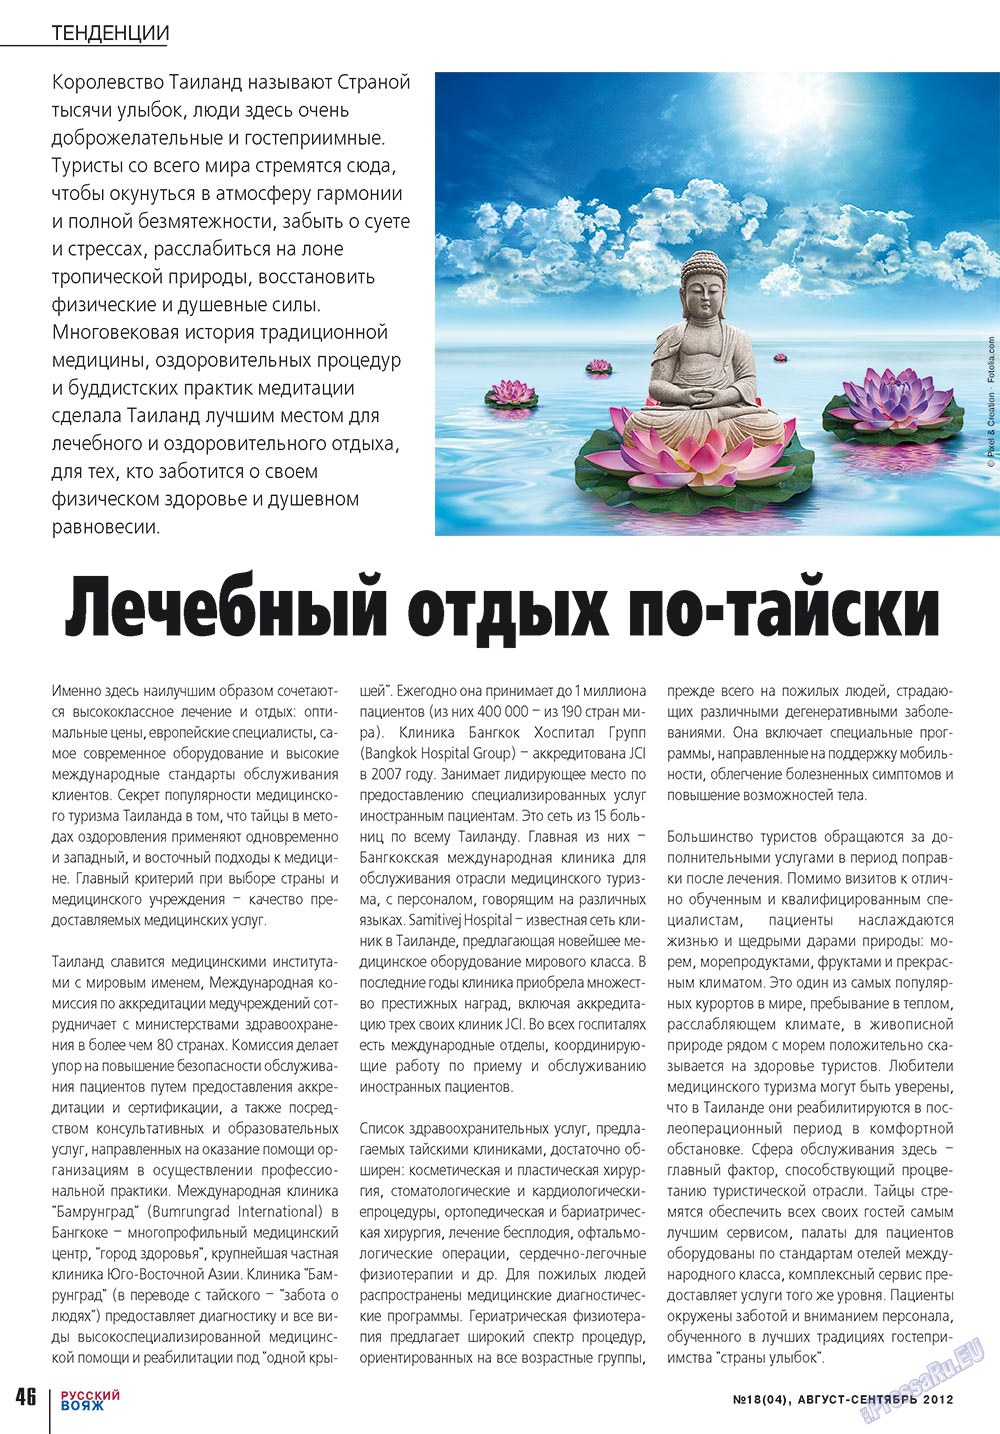 Русский вояж (журнал). 2012 год, номер 18, стр. 46